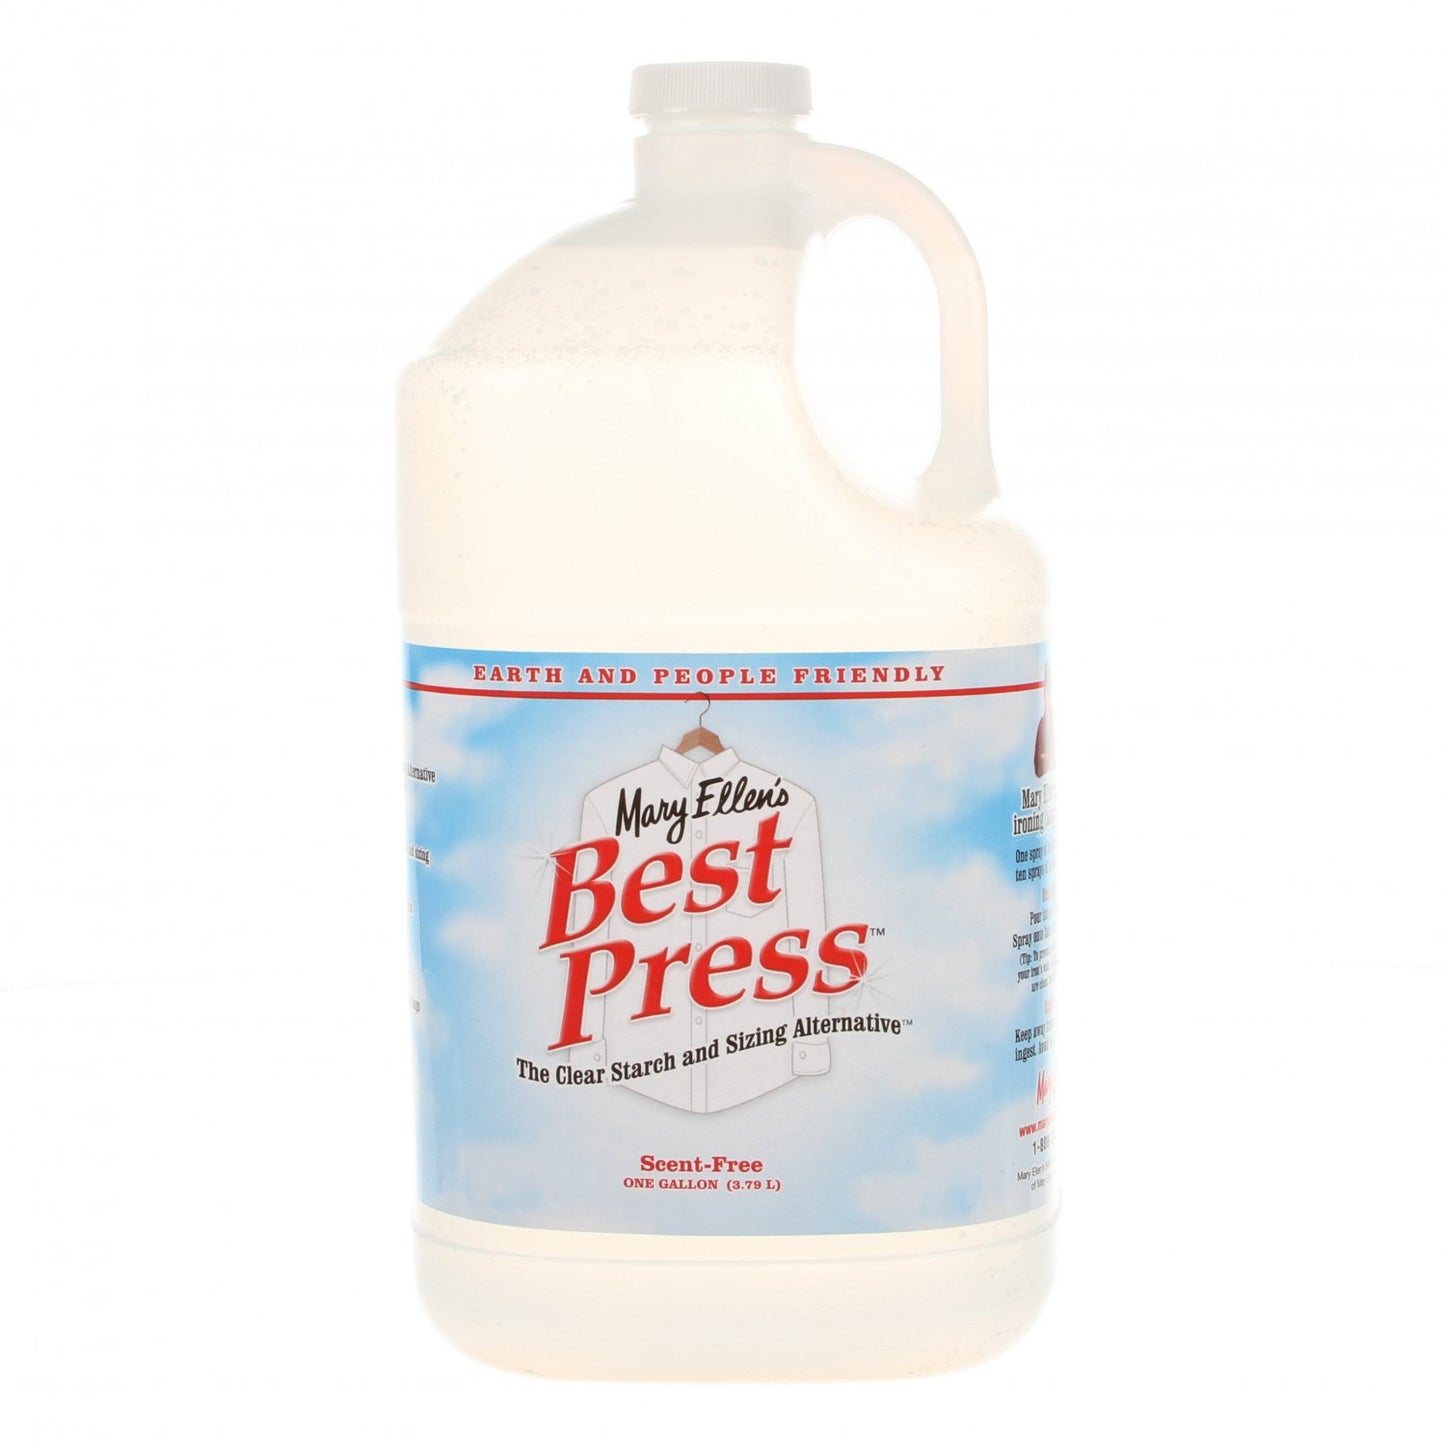 Best Press Gallon Refill Scent Free